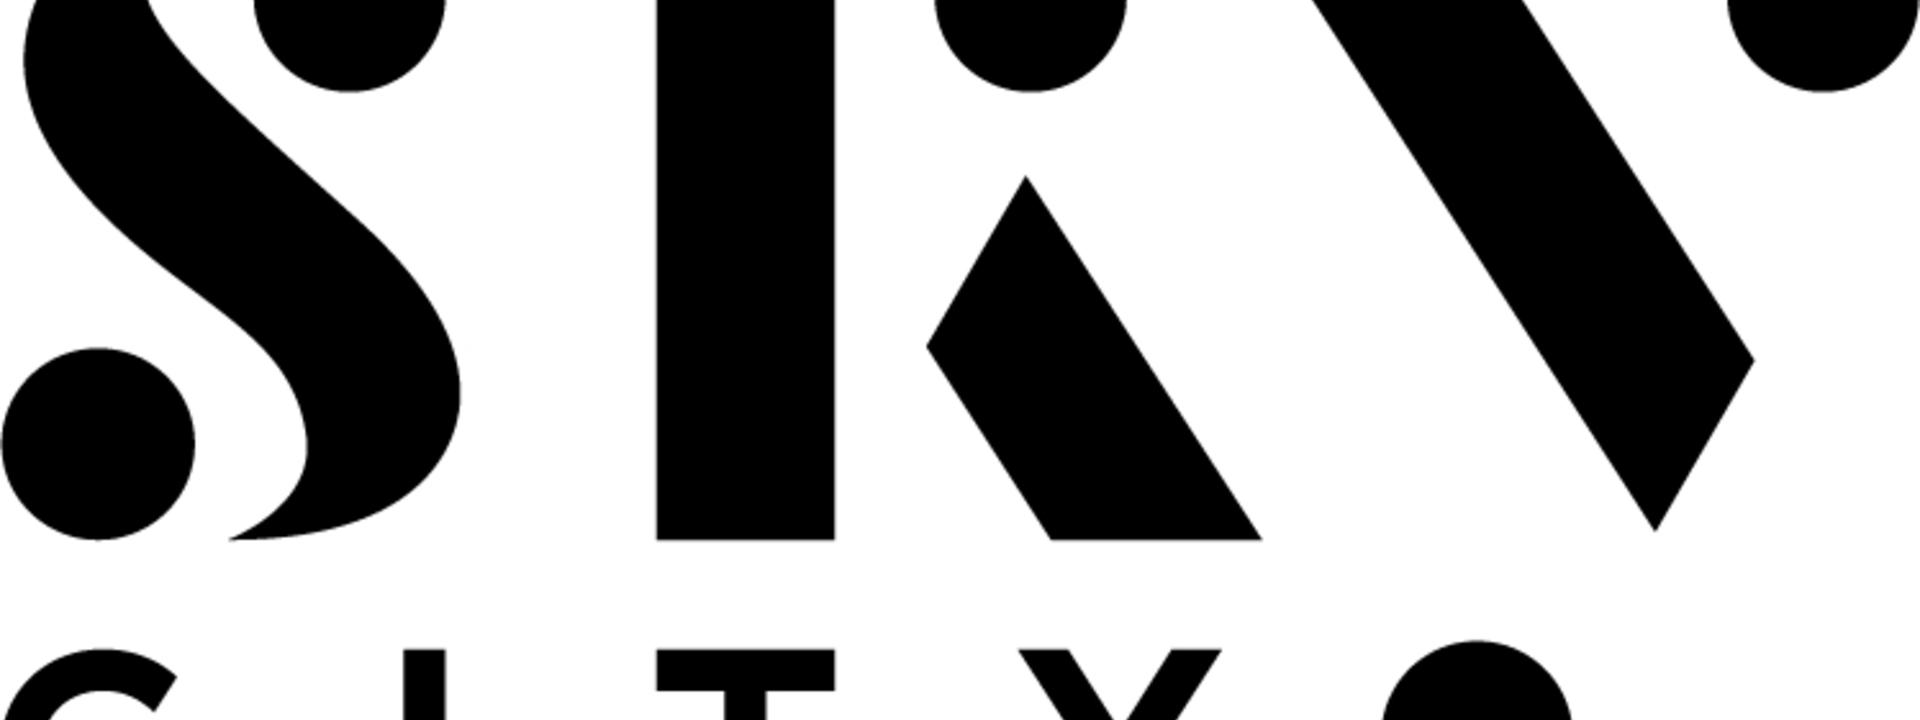 skycity-hotel-logo-stacked-black-rgb_0.jpg